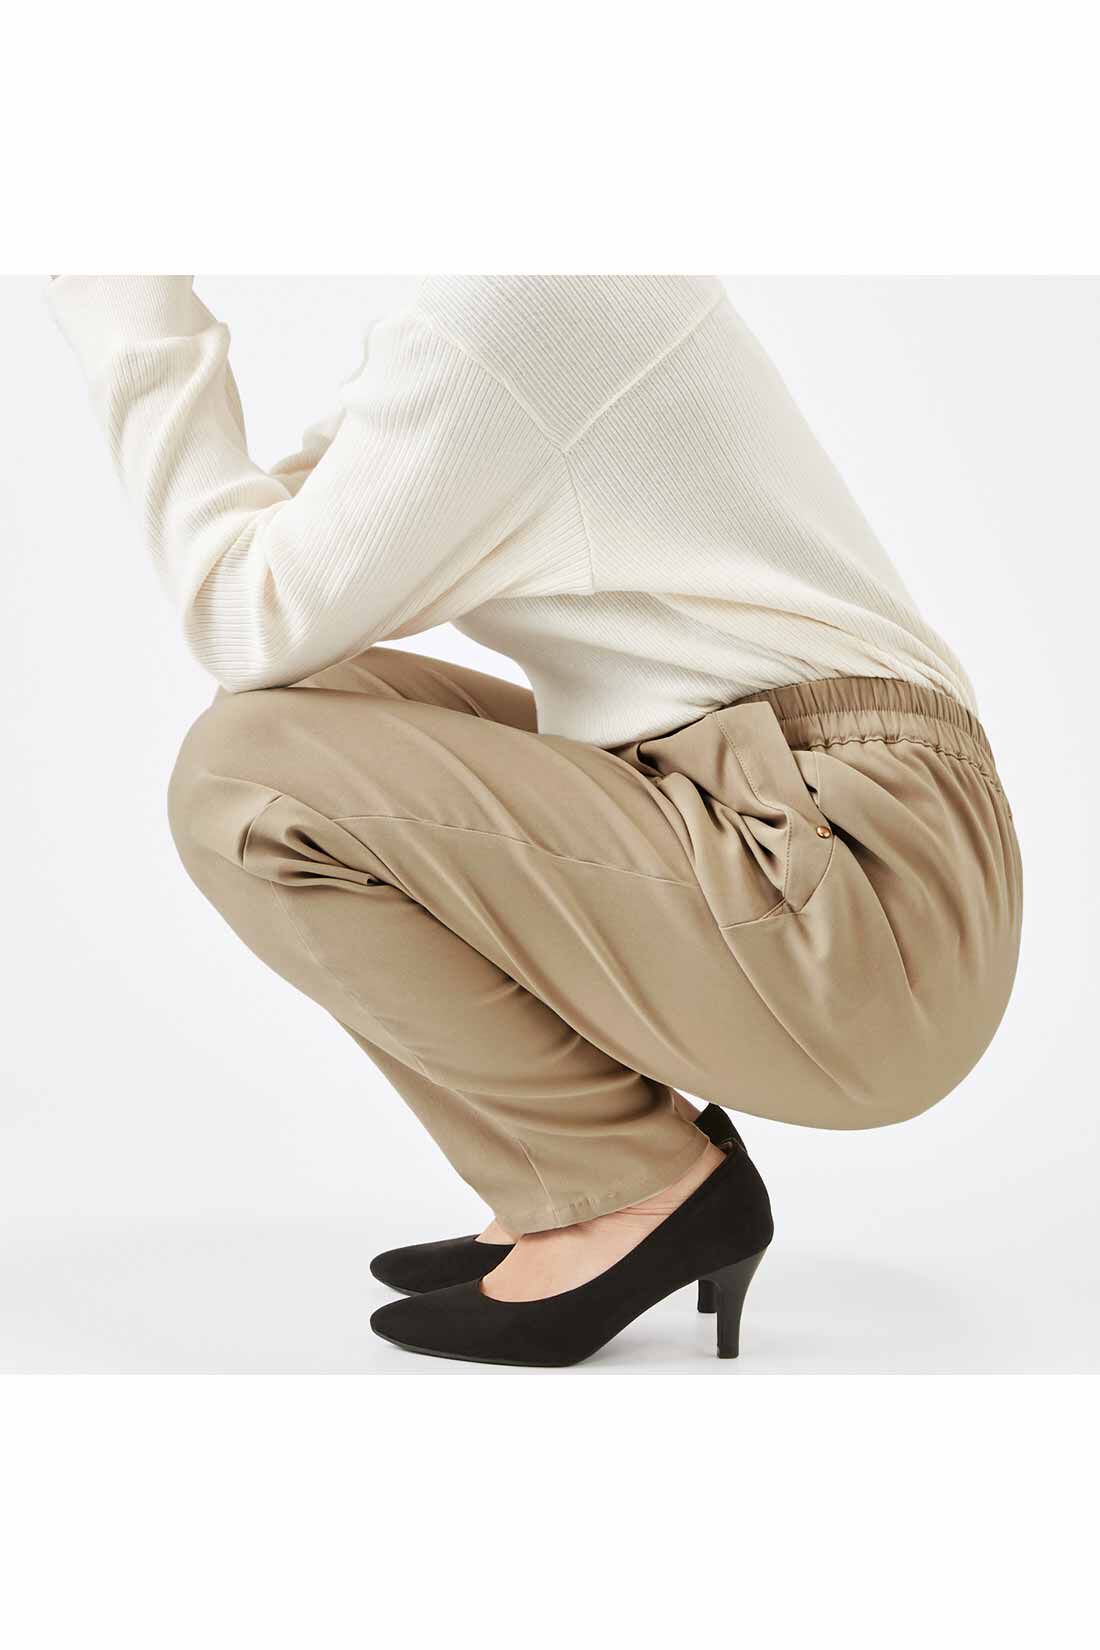 IEDIT|IEDIT[イディット]　ぐいっとしなやか すらりと美脚！ ストレッチ布はく素材のエアノビワイドパンツ〈ブラック〉|しゃがんでも座りっぱなしでも快適で、ひざやおしりも伸びやからくちん。背中も見えにくくて安心！